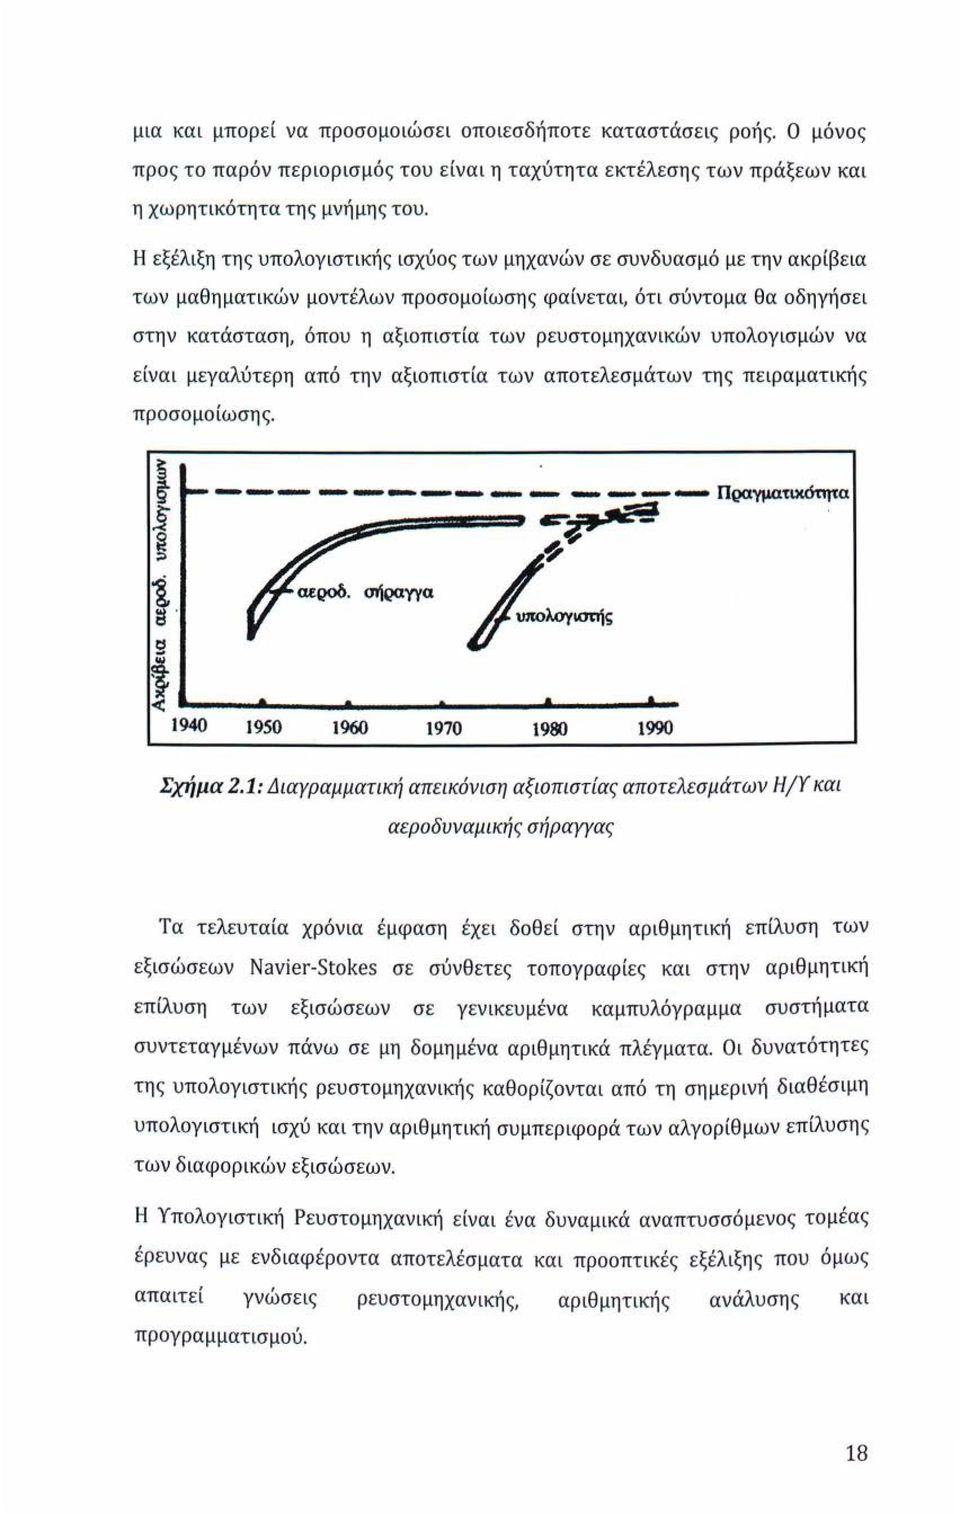 ρευστομηχανικών υπολογισμών να είναι μεγαλύτερη από την αξιοπιστία των αποτελεσμάτων της πειραματικής προσομοίωσης. --- ------~ - - - --- Πραγματι.κ6τητα ;:_.:-~ ~ν 1950 1960 1970 19~ 1990 Σχήμα 2.